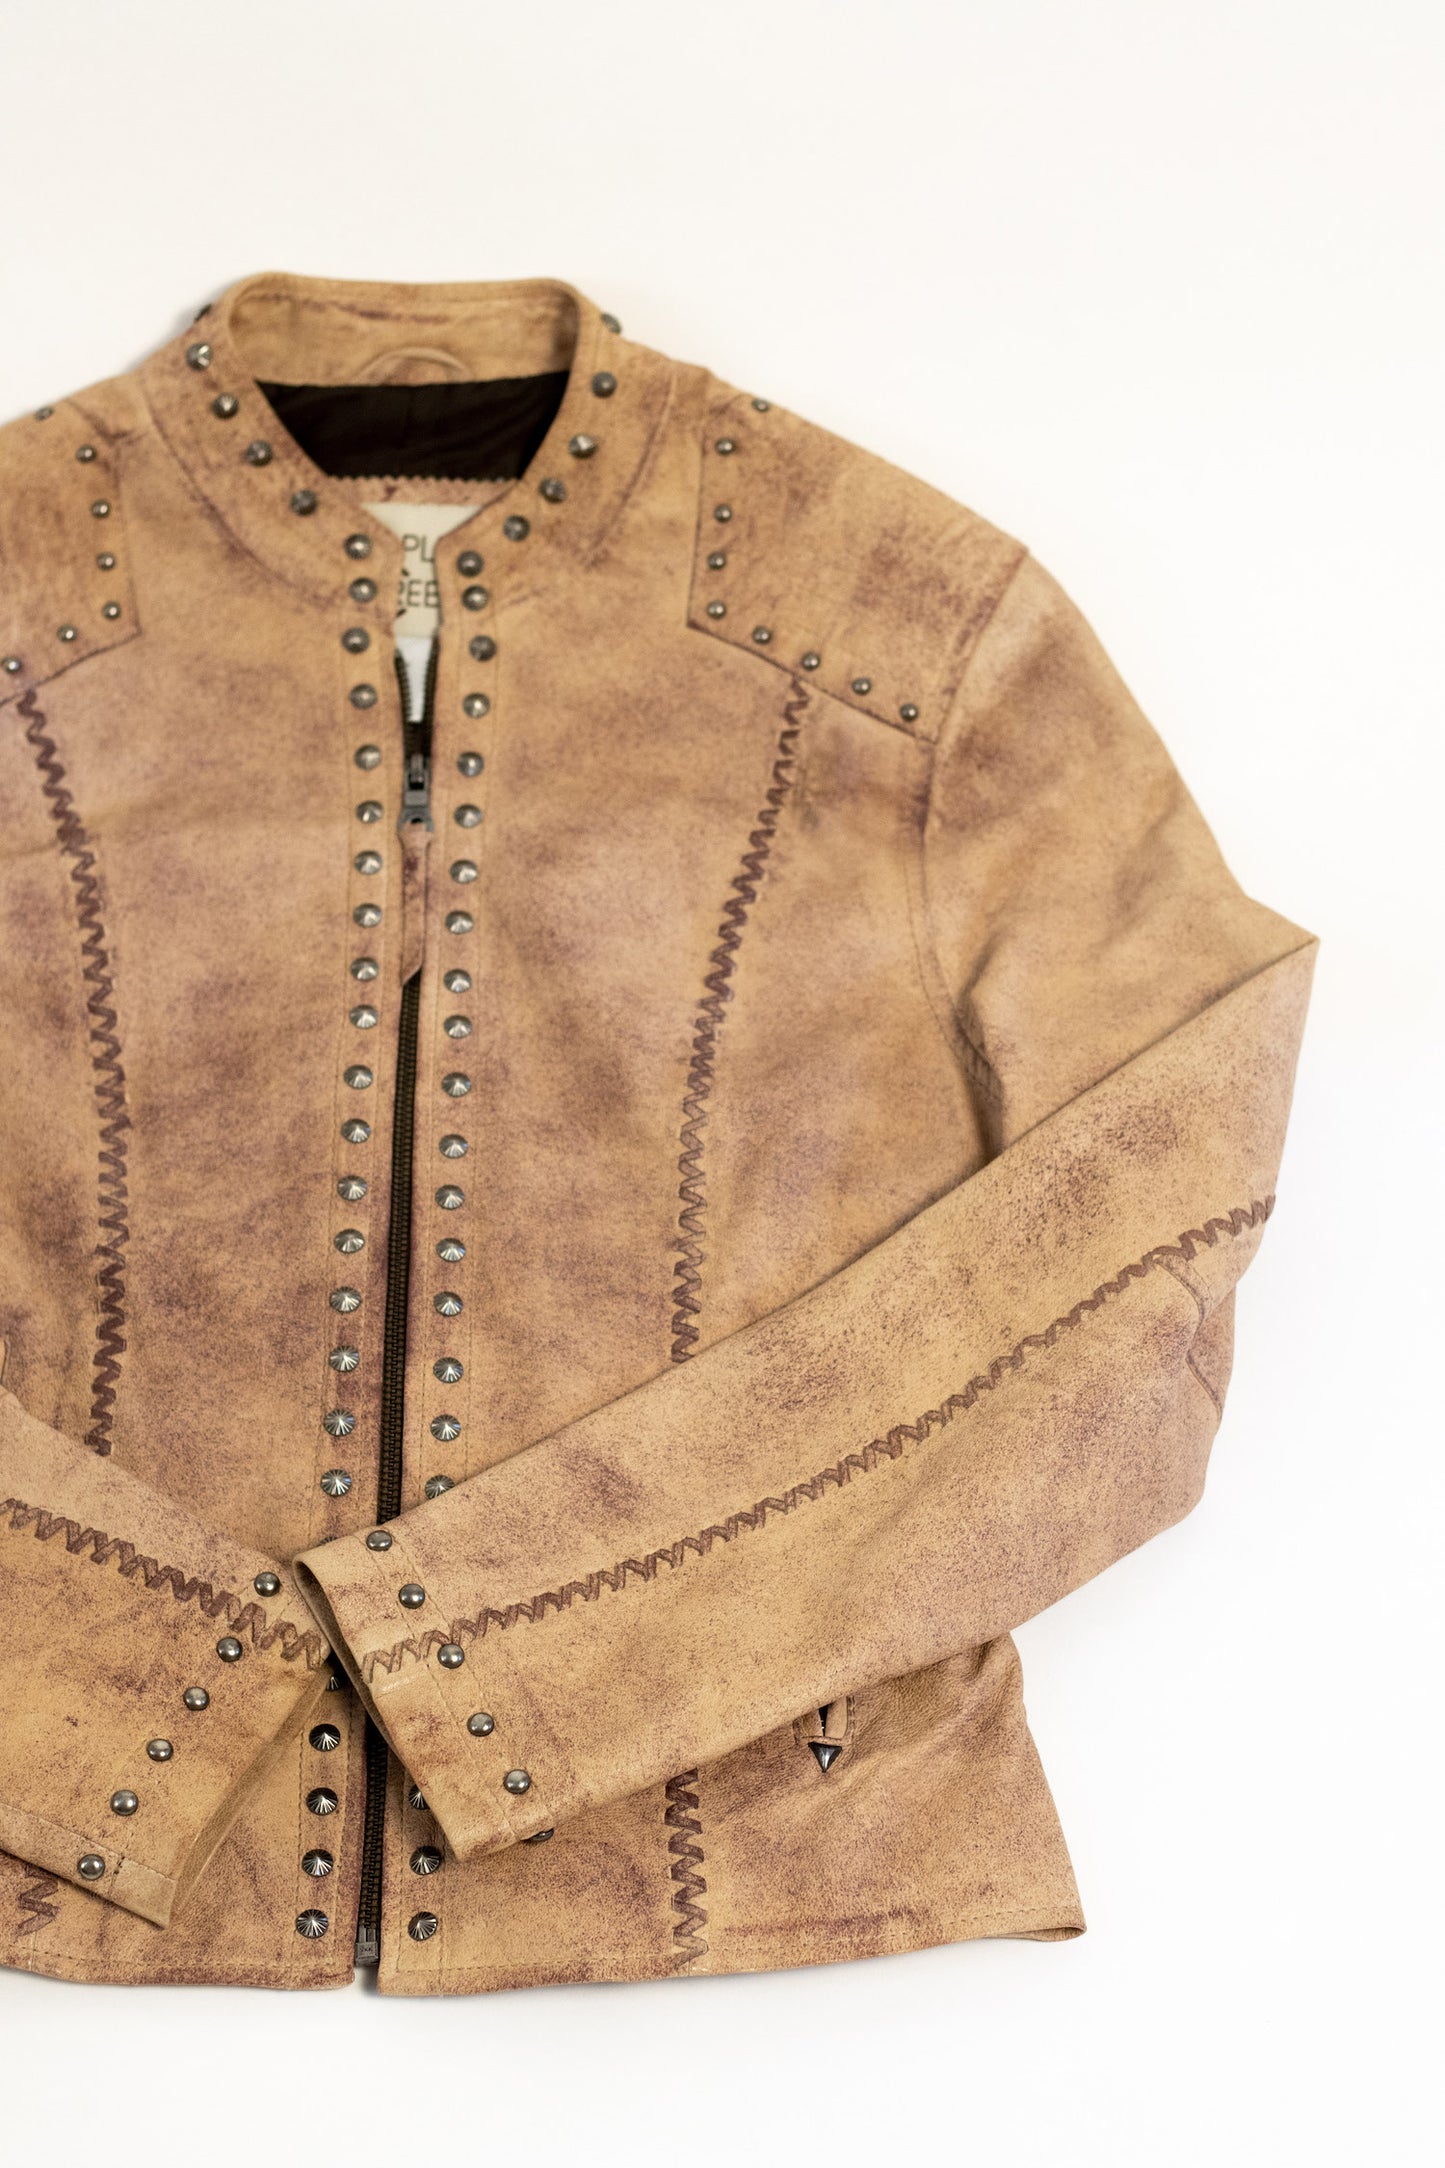 Vintage Studded Cross Leather Jacket